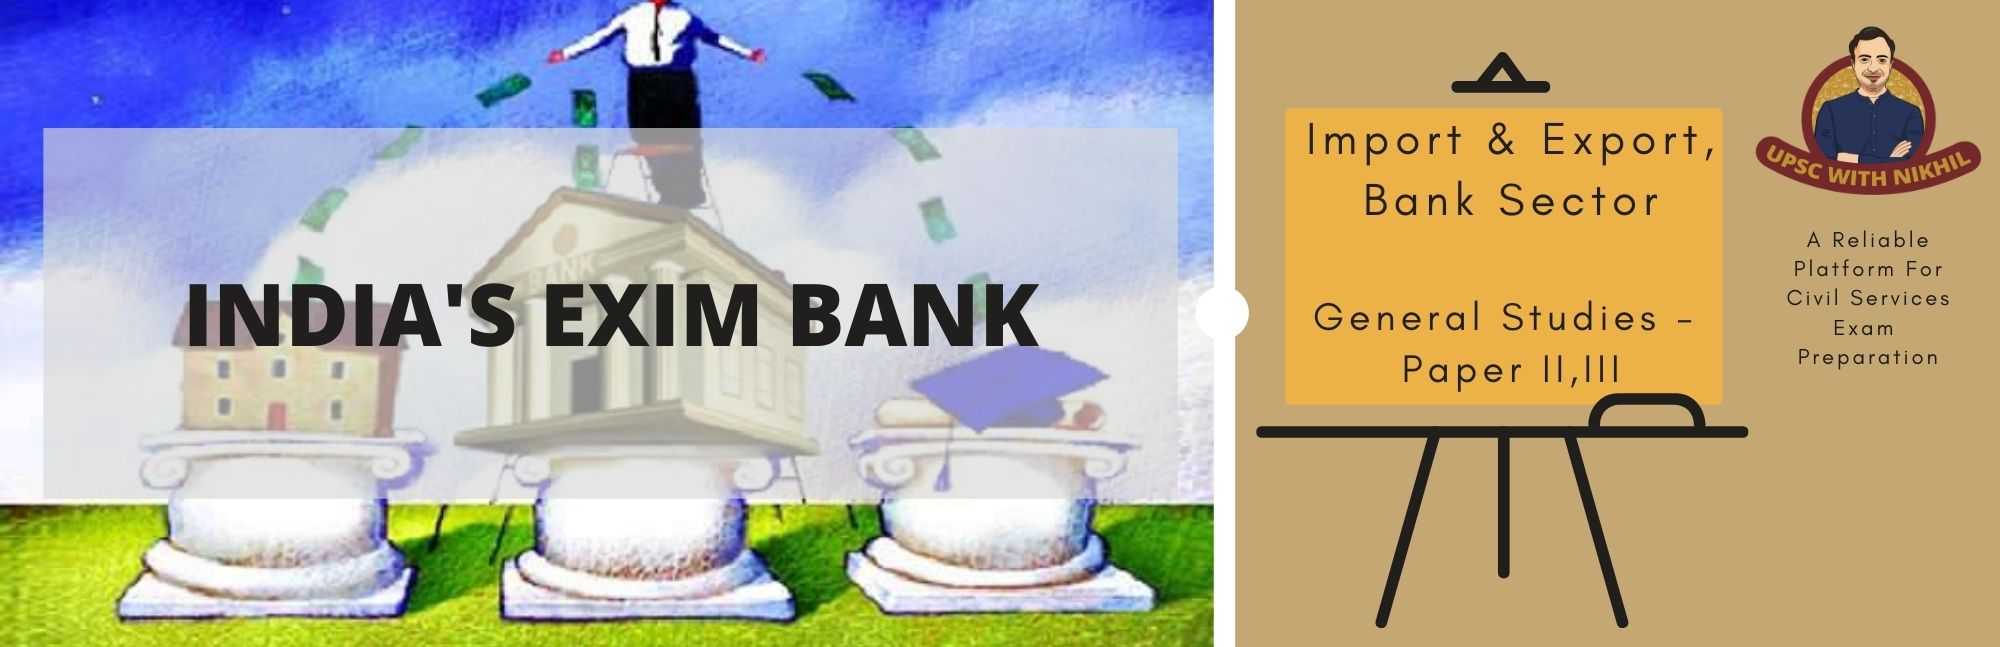 India's Exim Bank